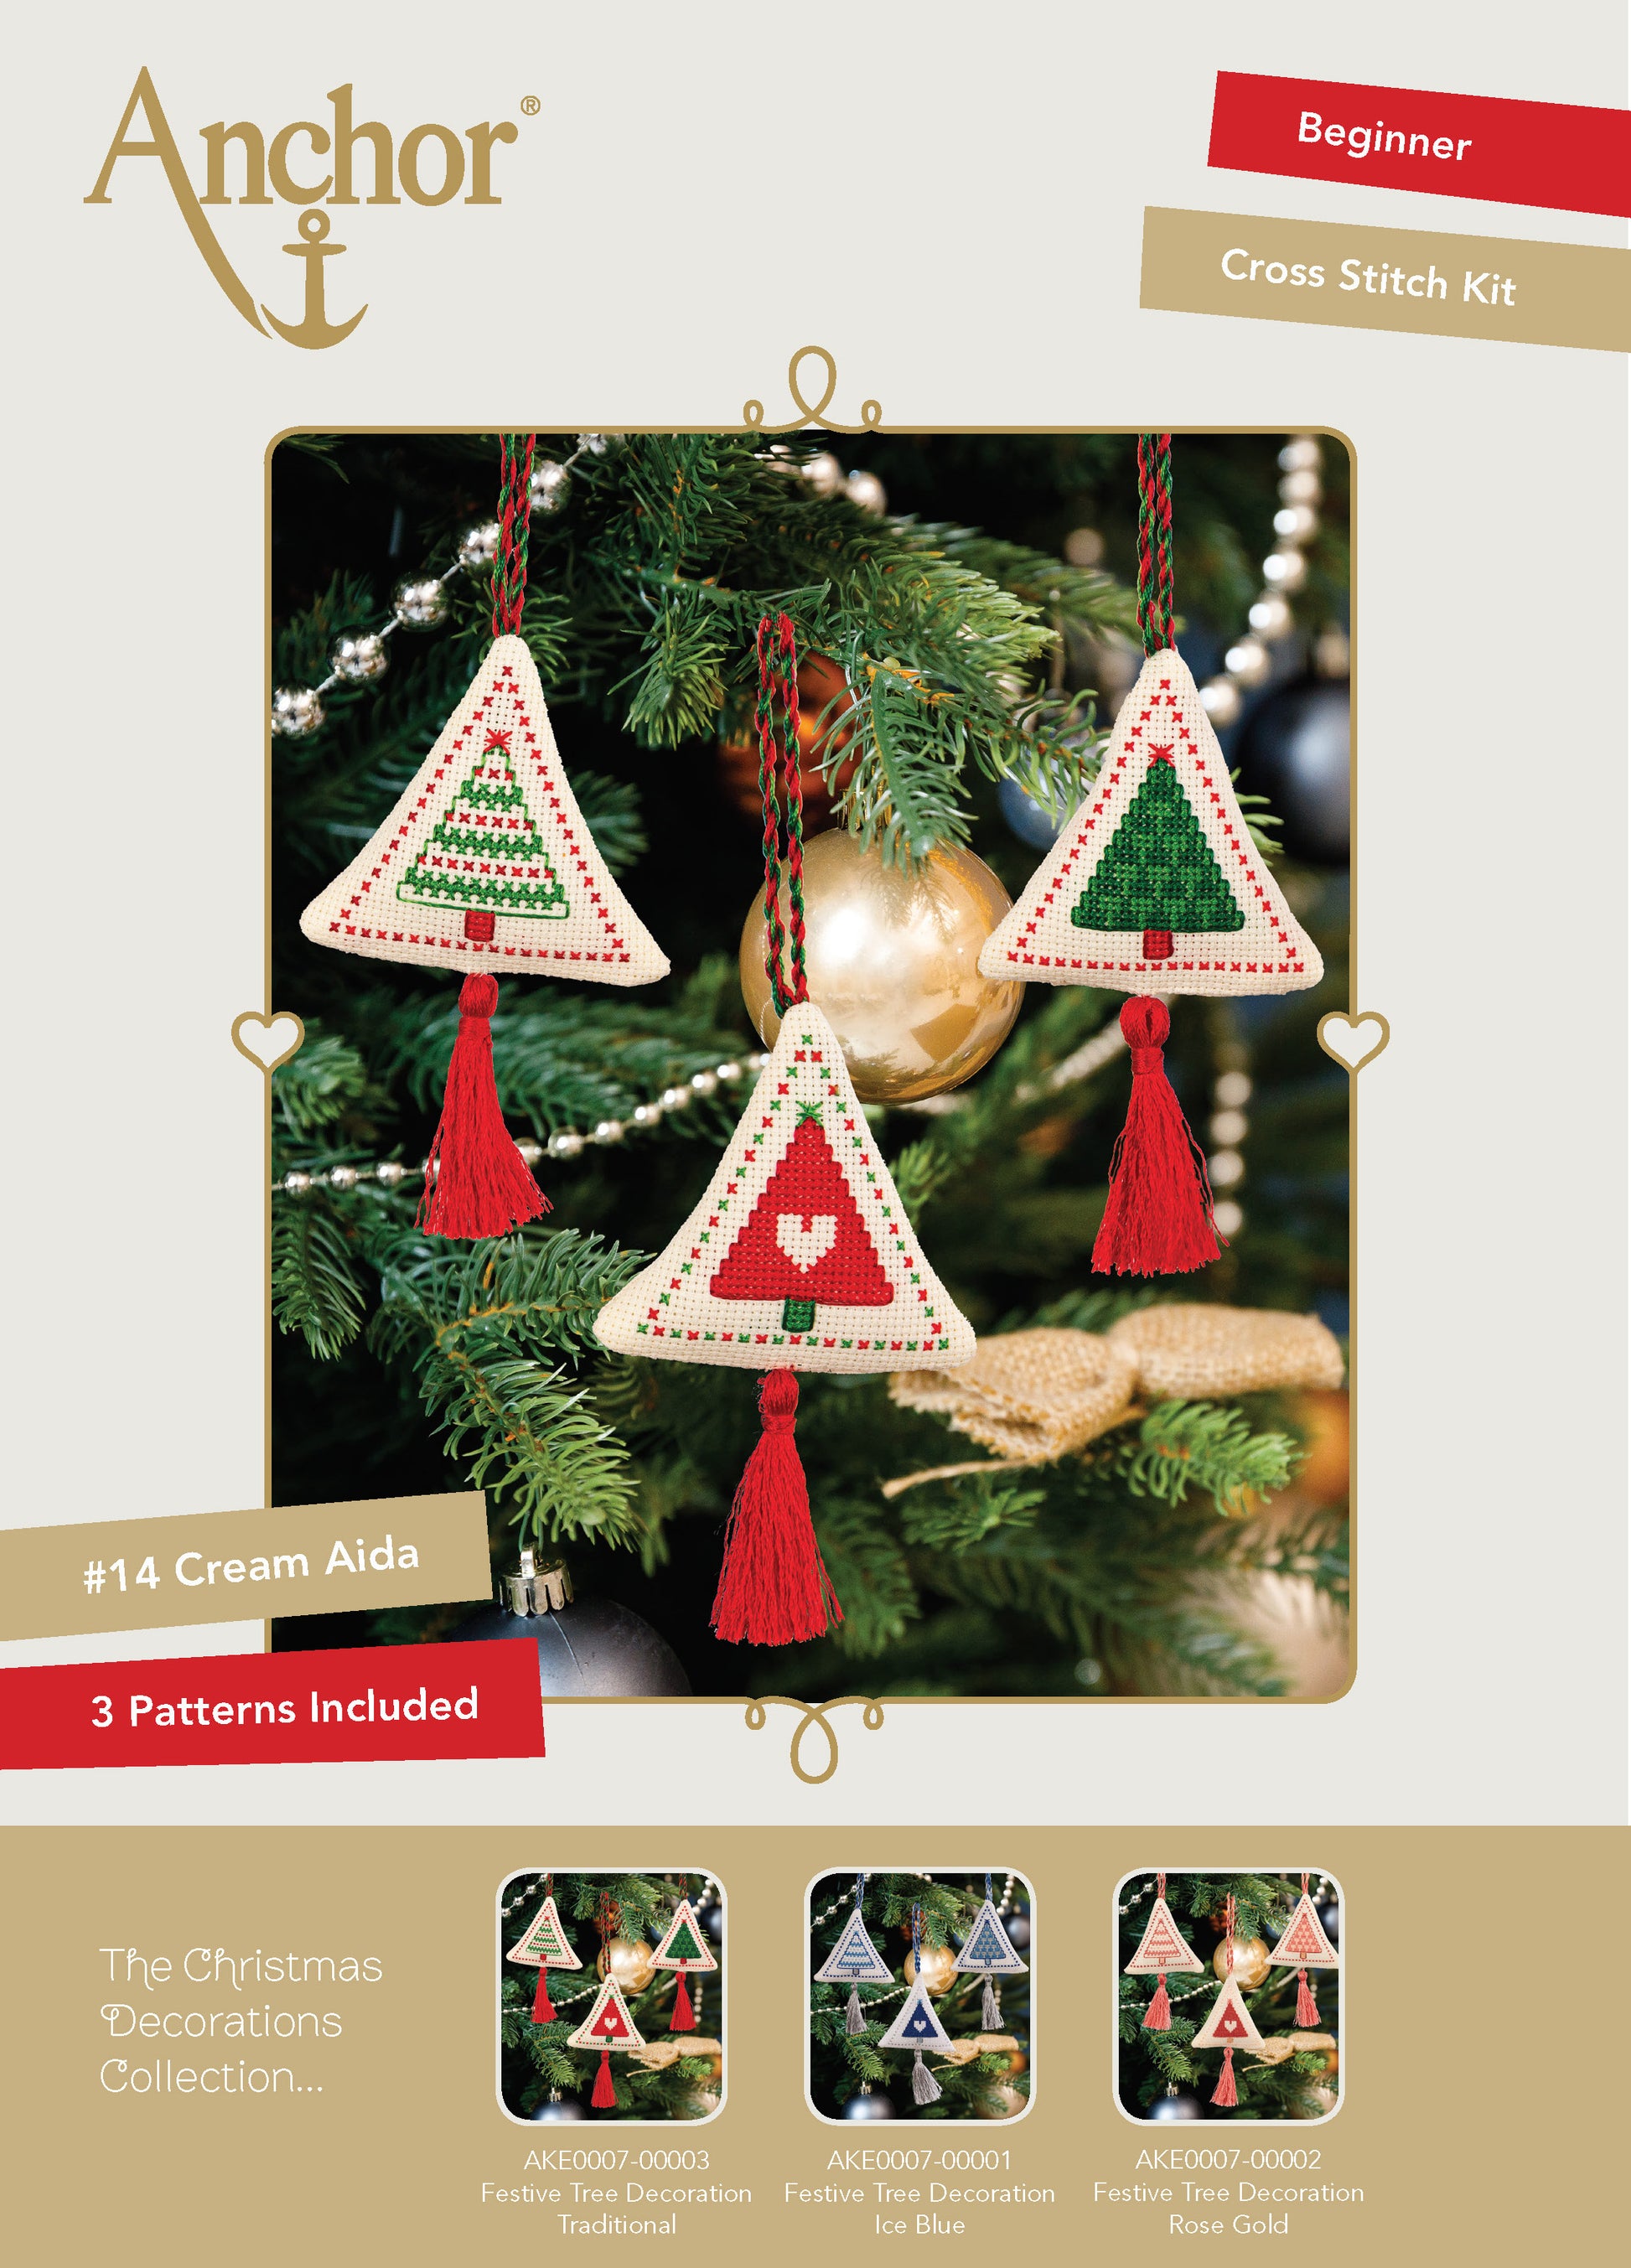 Información Set de 3 adornos navideños en punto de cruz en forma de pequeños árboles de navidad para árbol de navidad de Anchor